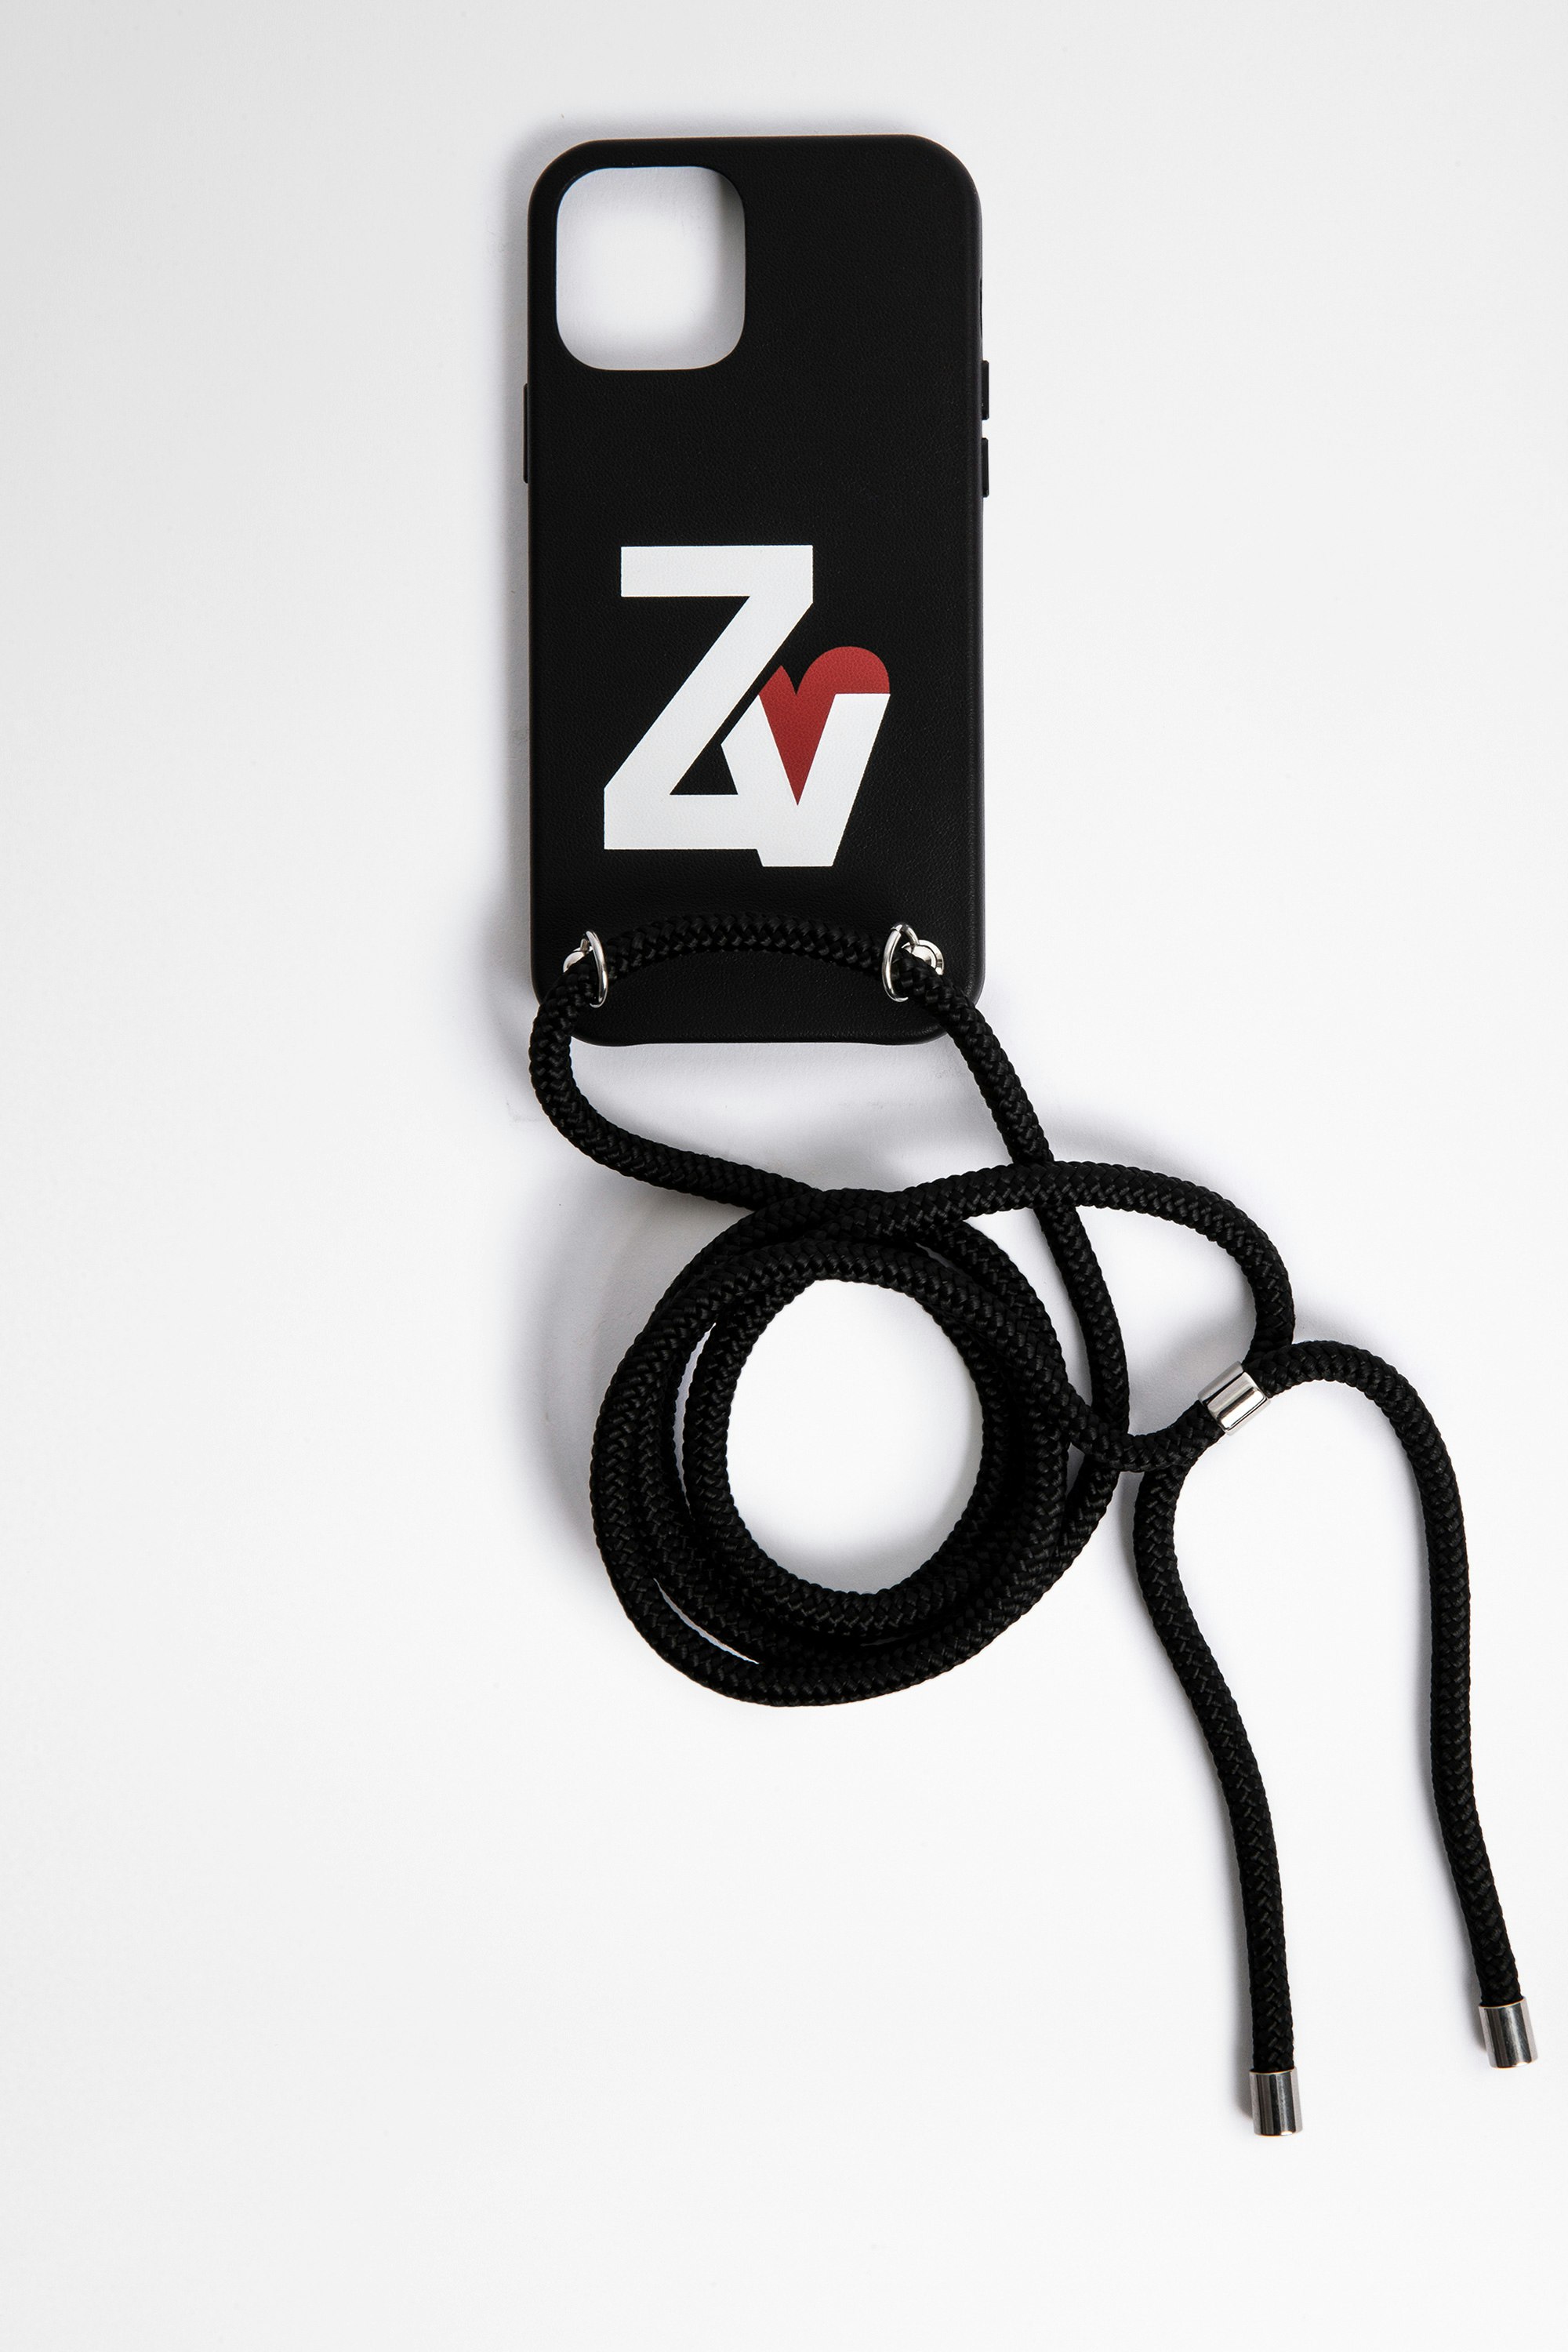 Coque IPhone 12 ZV Crush Rope Coque IPhone 12 noire à bandoulière
Non compatible avec l’IPhone 12 Mini et l’IPhone 12 Pro Max